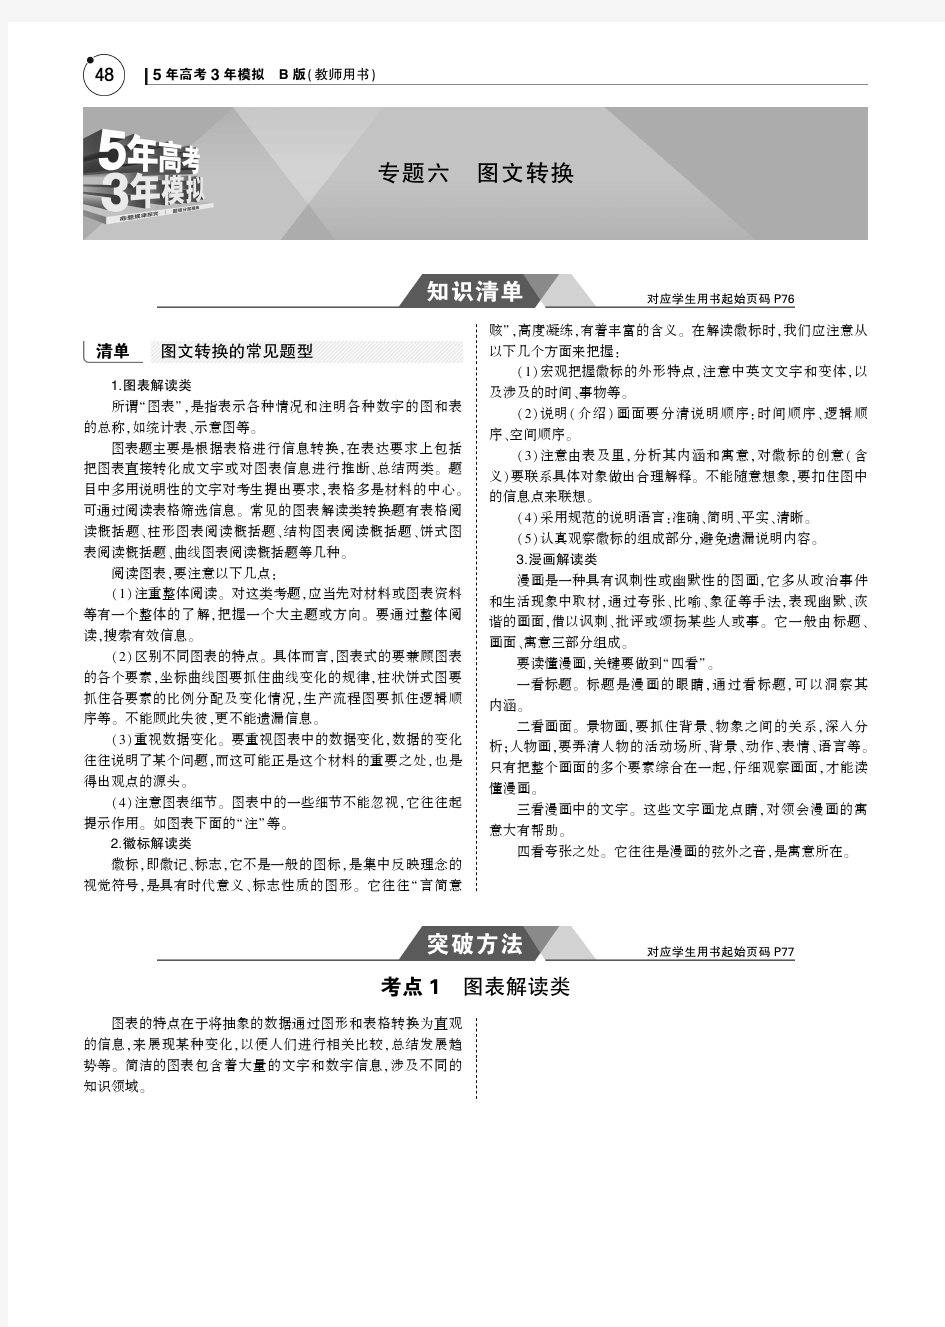 (江苏版5年高考3年模拟)2019年高考语文专题六图文转换讲义(pdf)